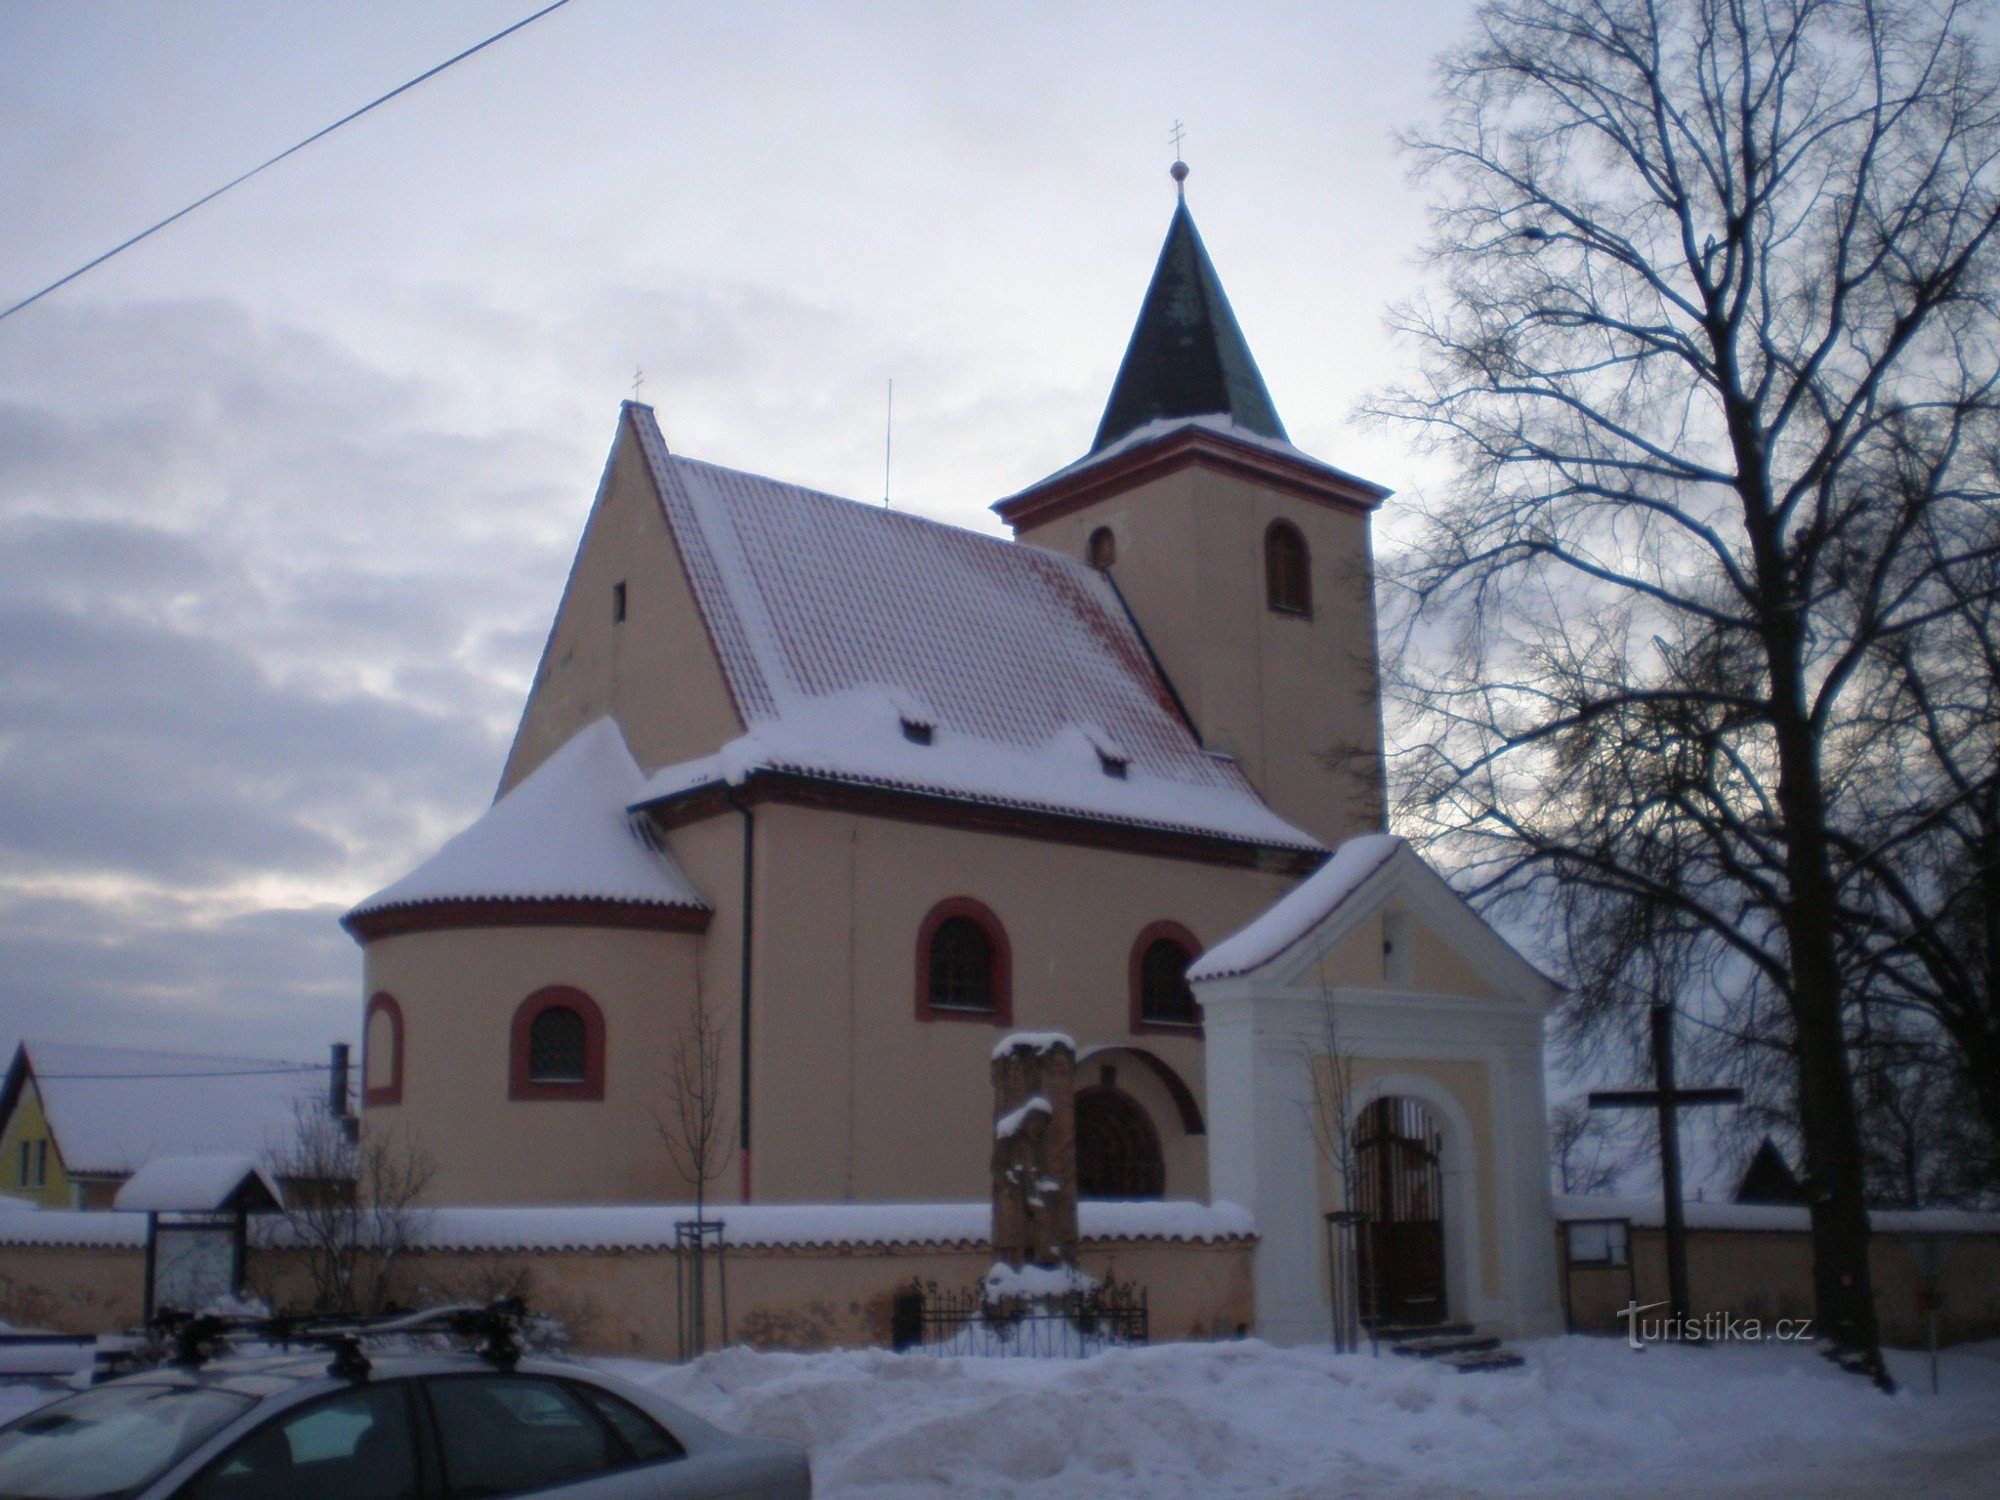 Hrusice - église de St. Venceslas